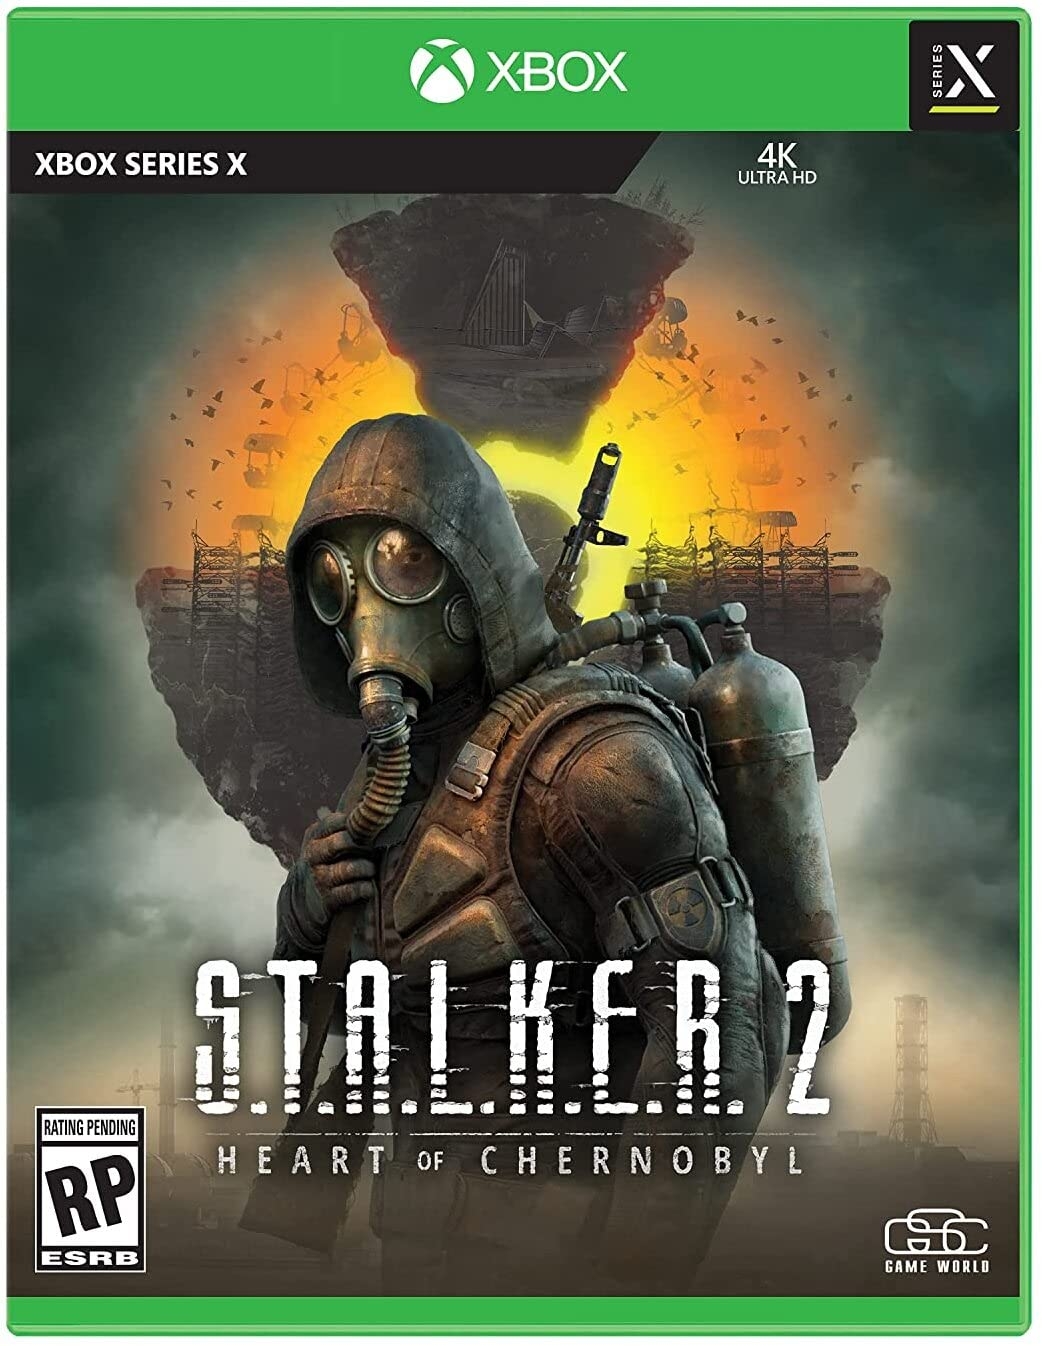 Stalker 2 também está previsto para ser lançado no primeiro